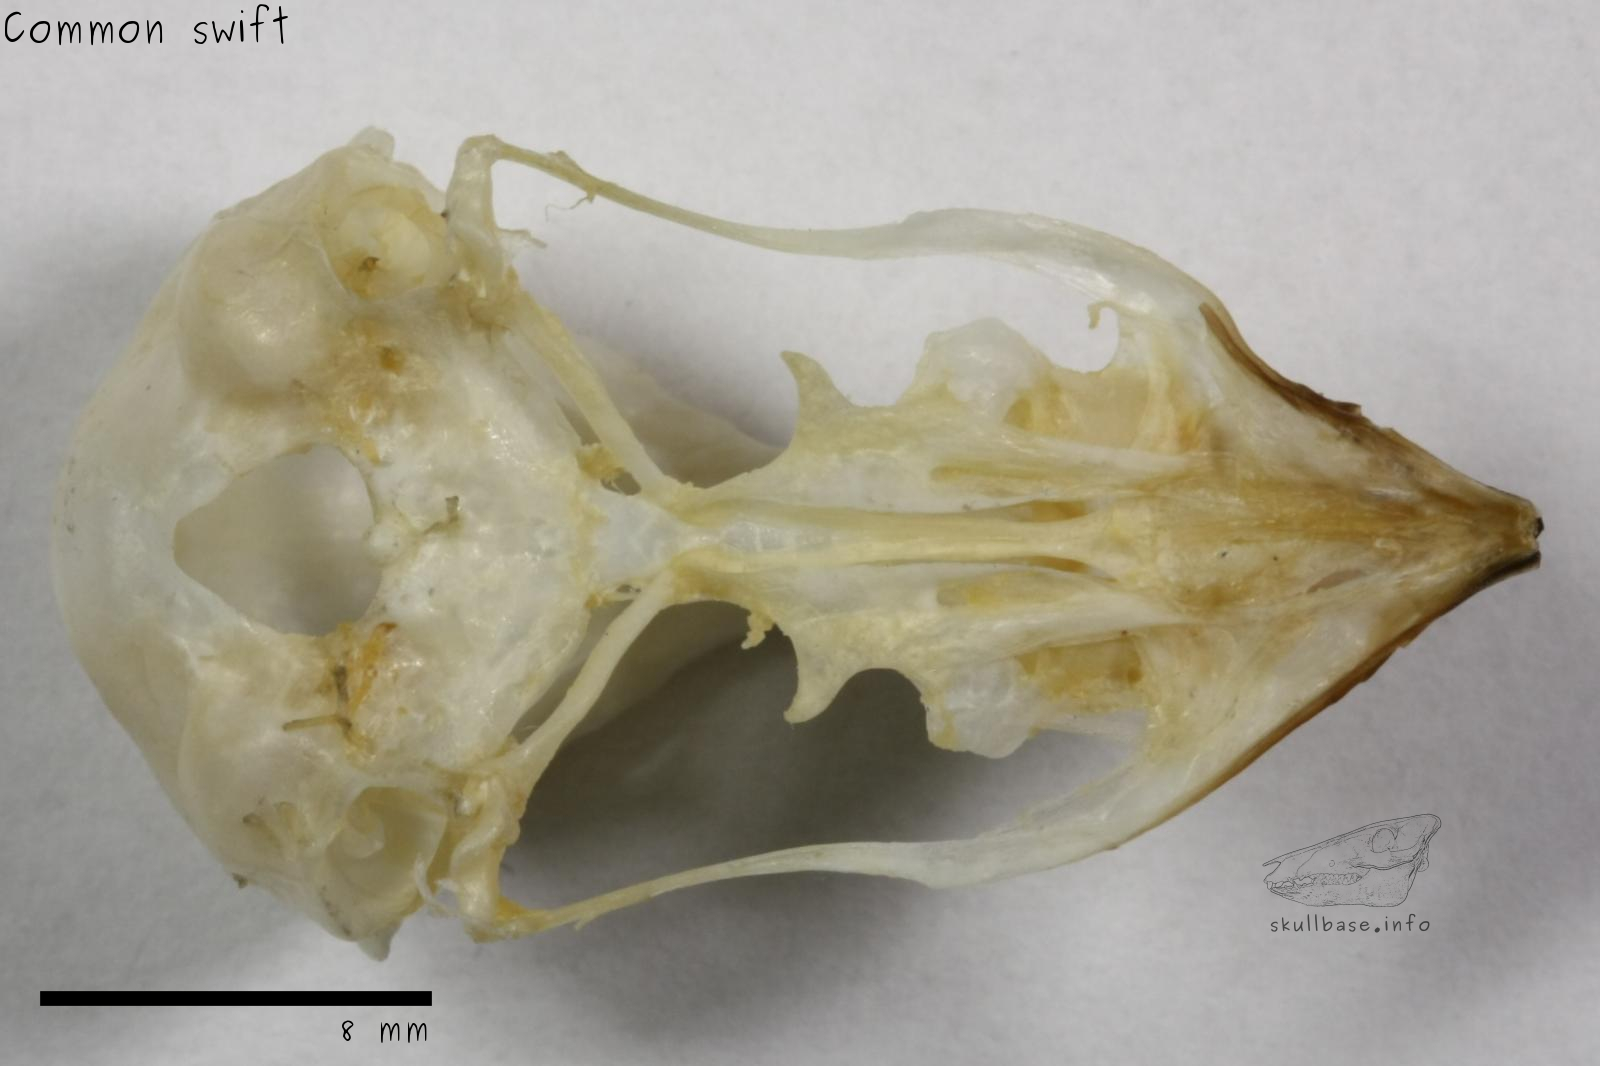 Common swift (Apus apus) skull ventral view